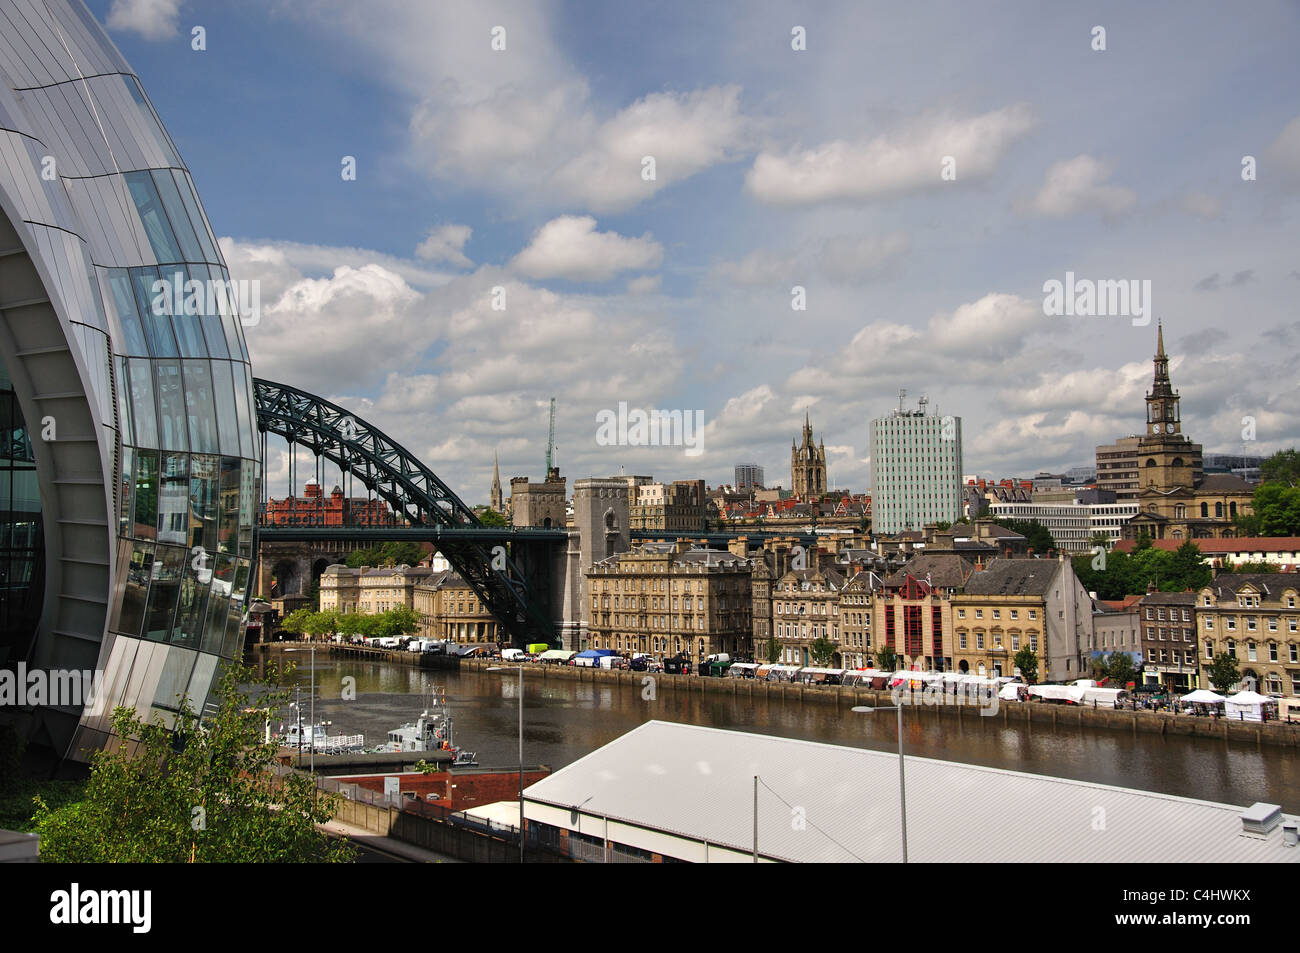 Vue sur la ville à partir de la Sage Gateshead, Newcastle-upon-Tyne, Tyne et Wear, Angleterre, Royaume-Uni Banque D'Images